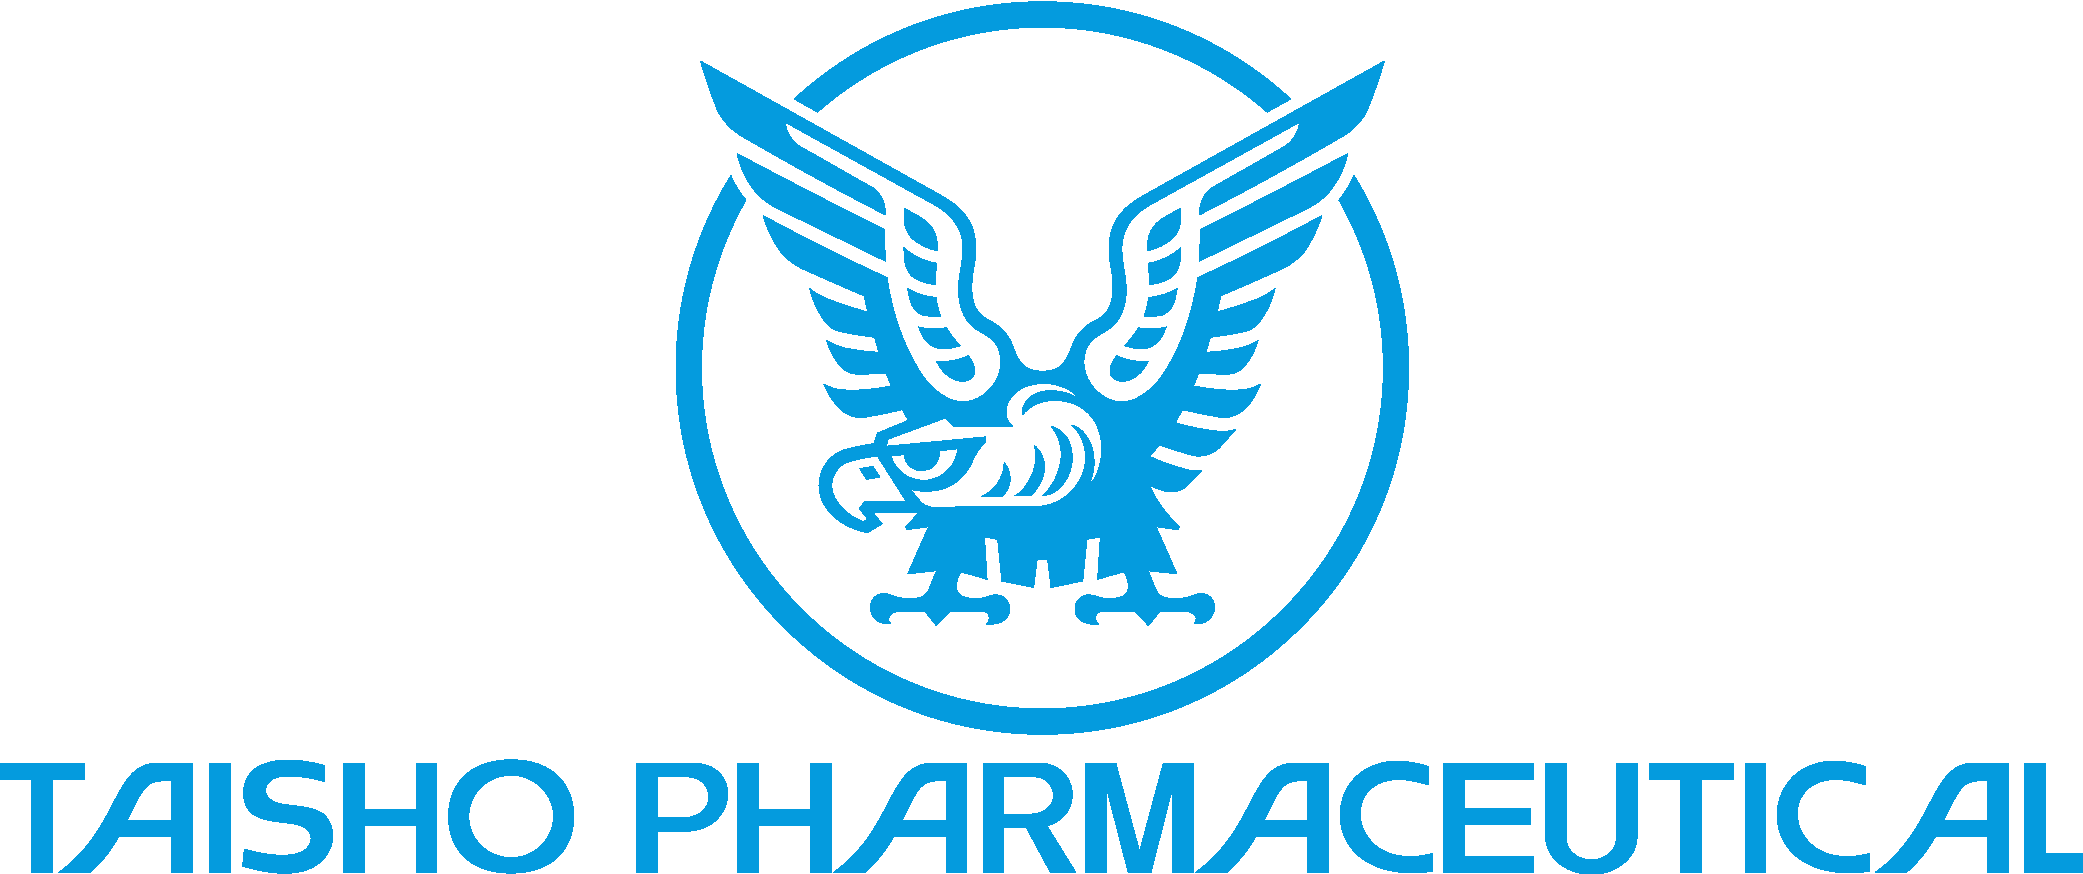 Taisho Pharmaceutical Co. Logo Vector